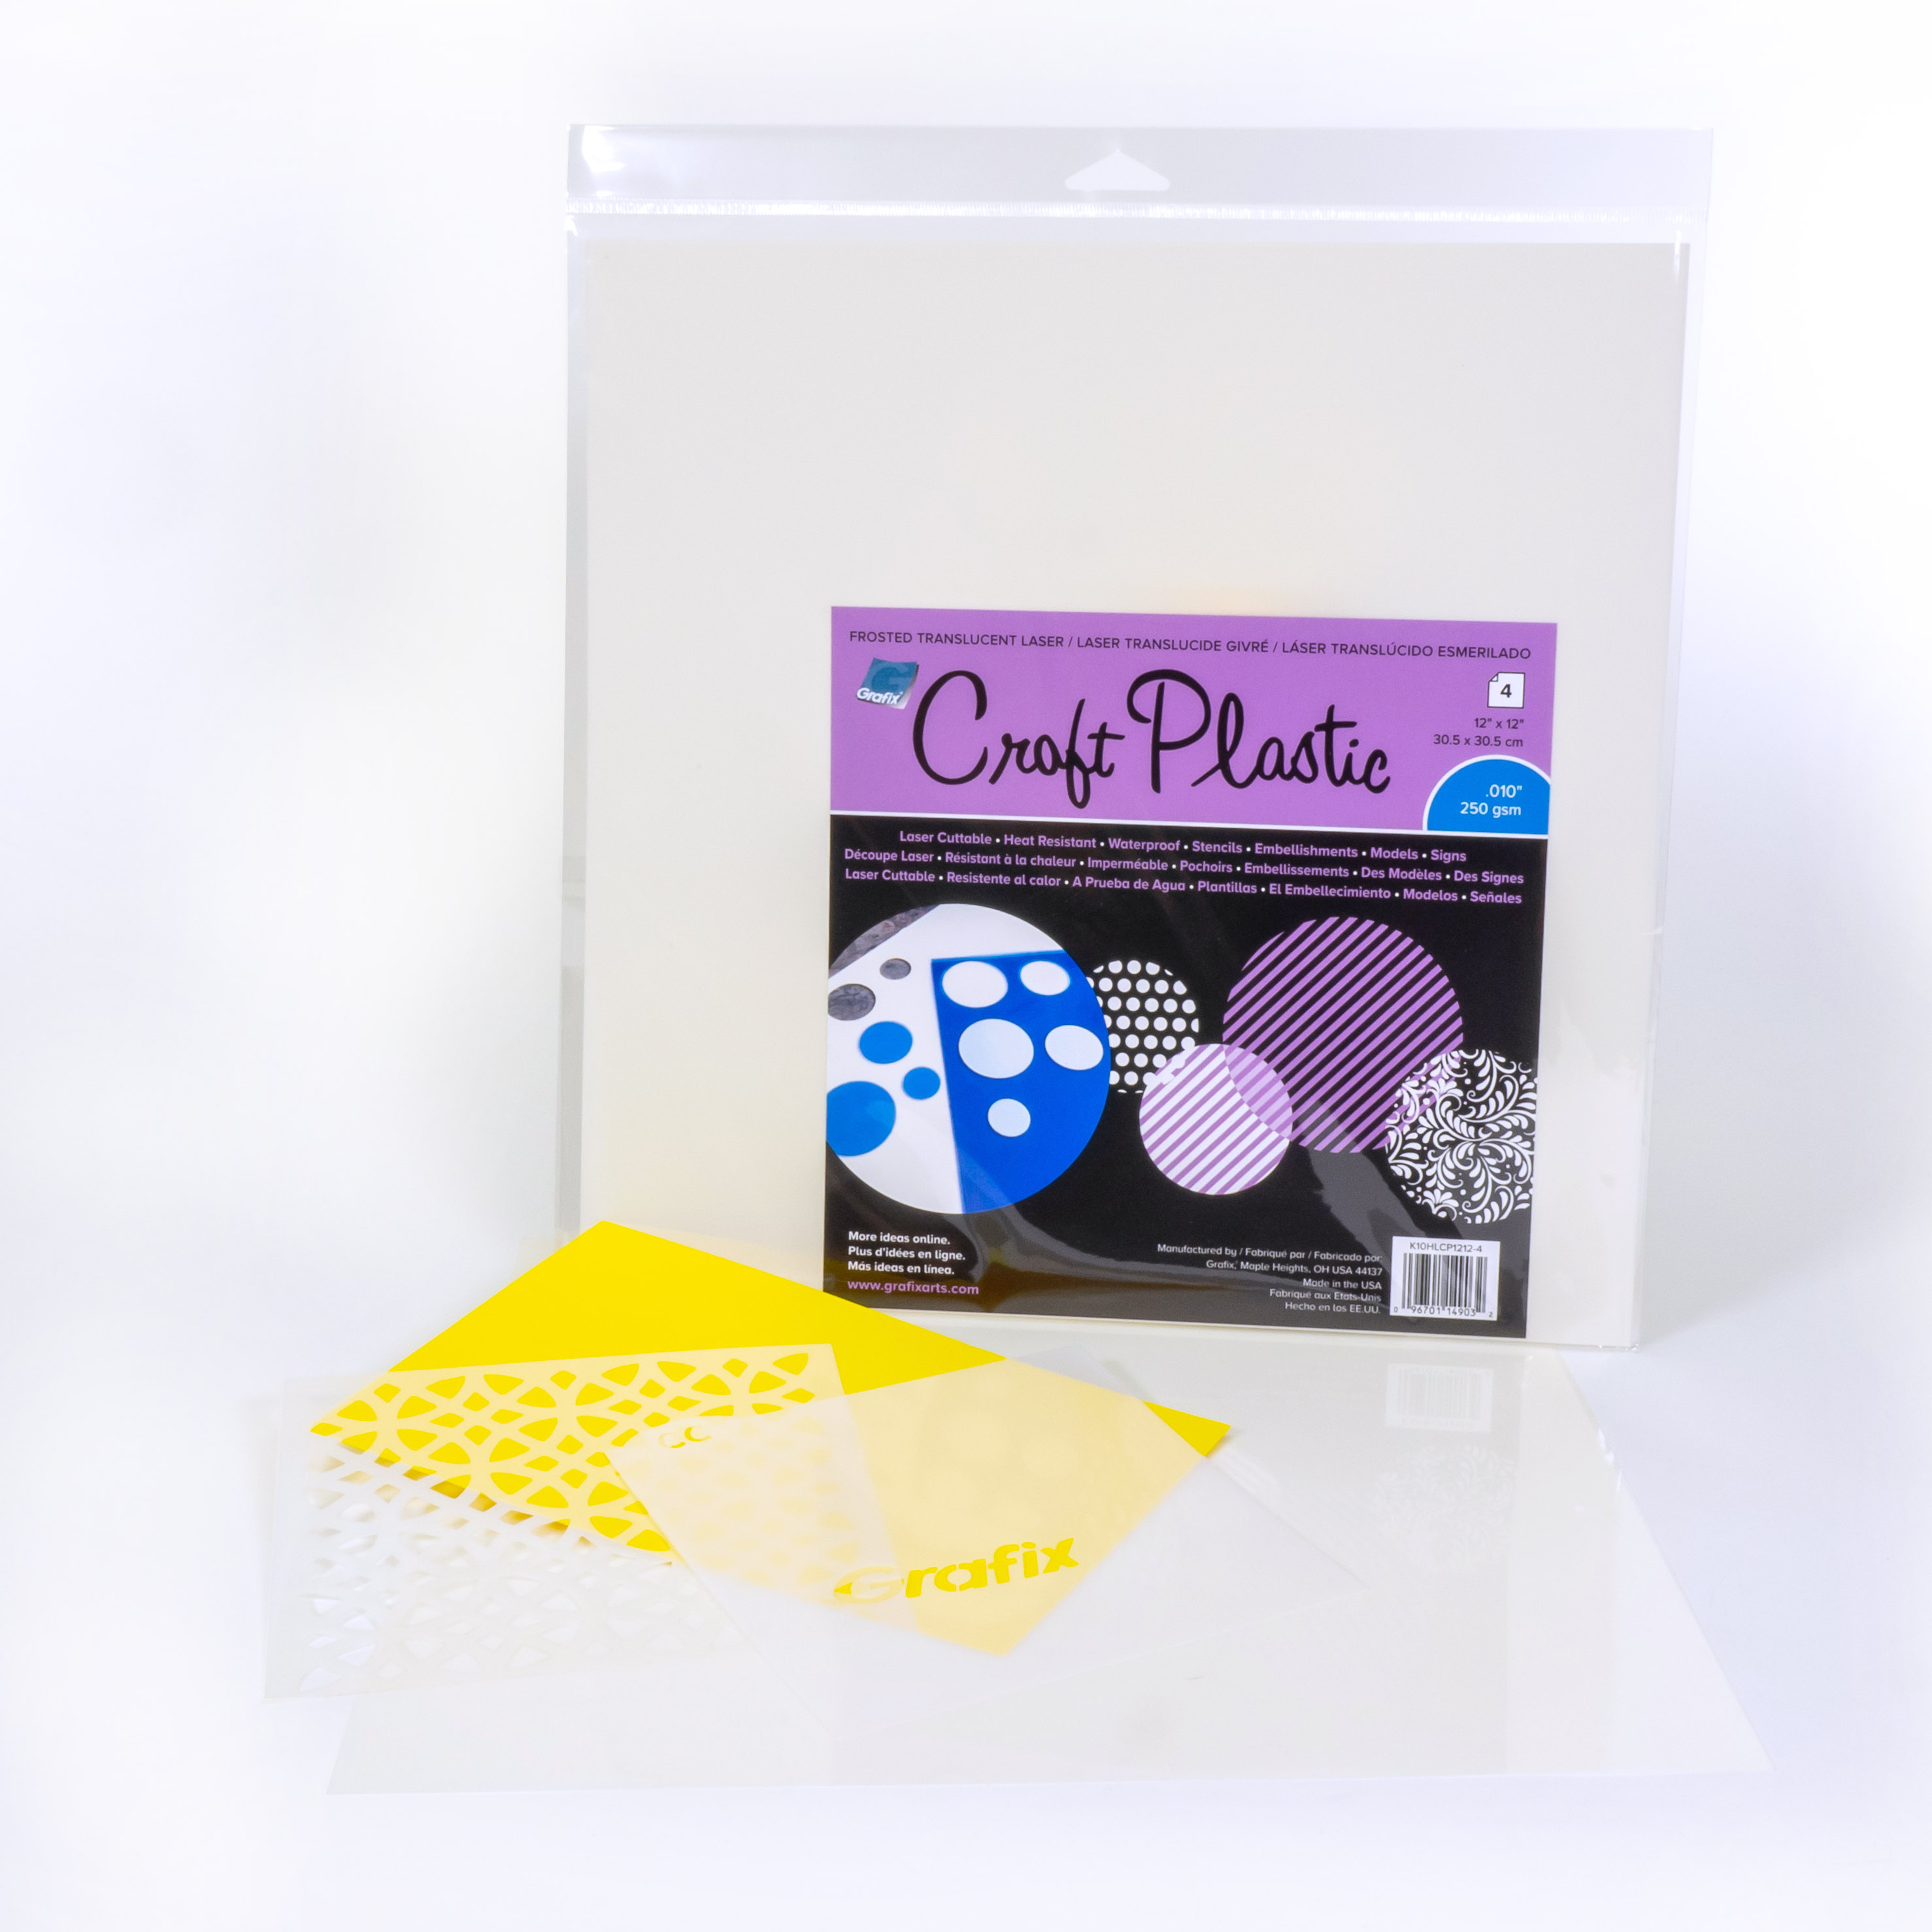 Adhesive Film and Sheets - Grafix Plastics